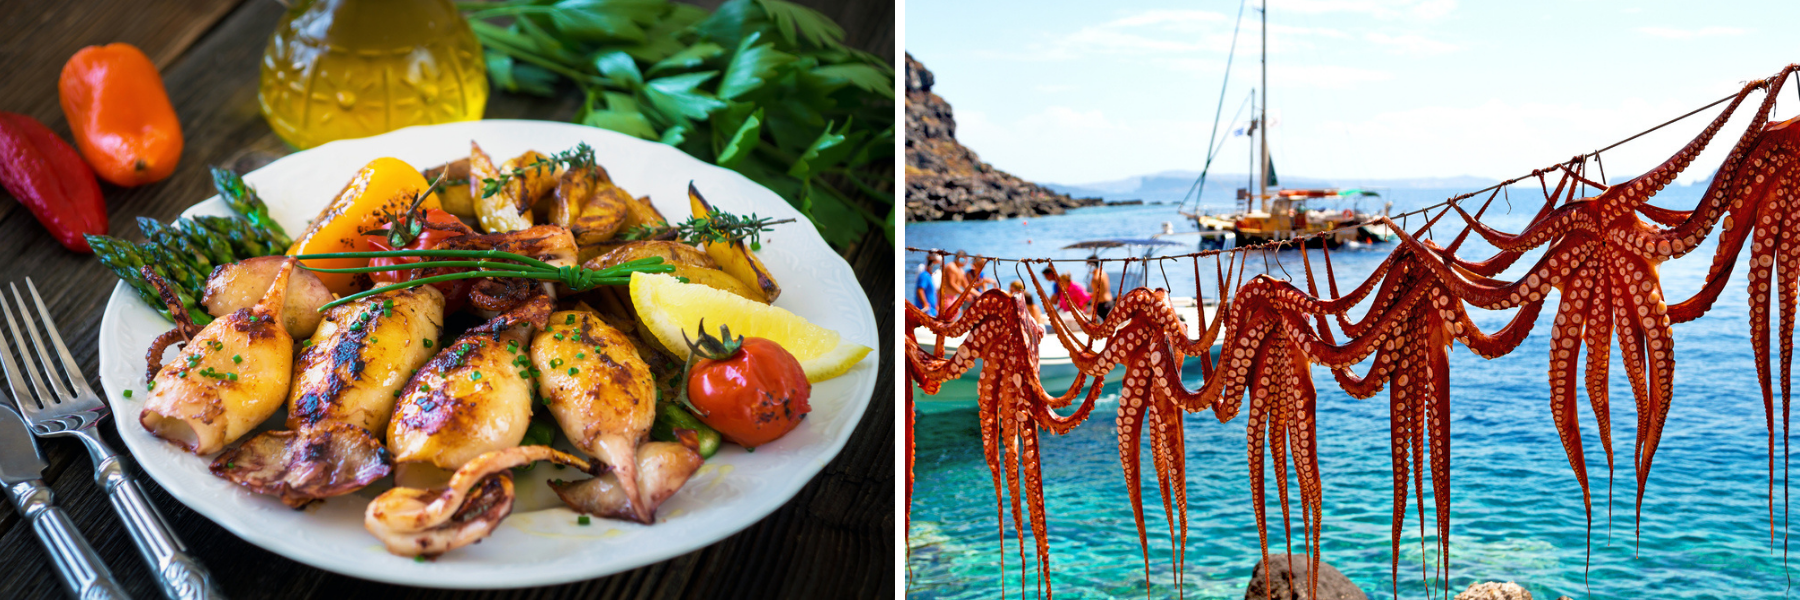 Τα θαλασσινά κυριαρχούν τόσο στην κροατική όσο και στην ελληνική κουζίνα.